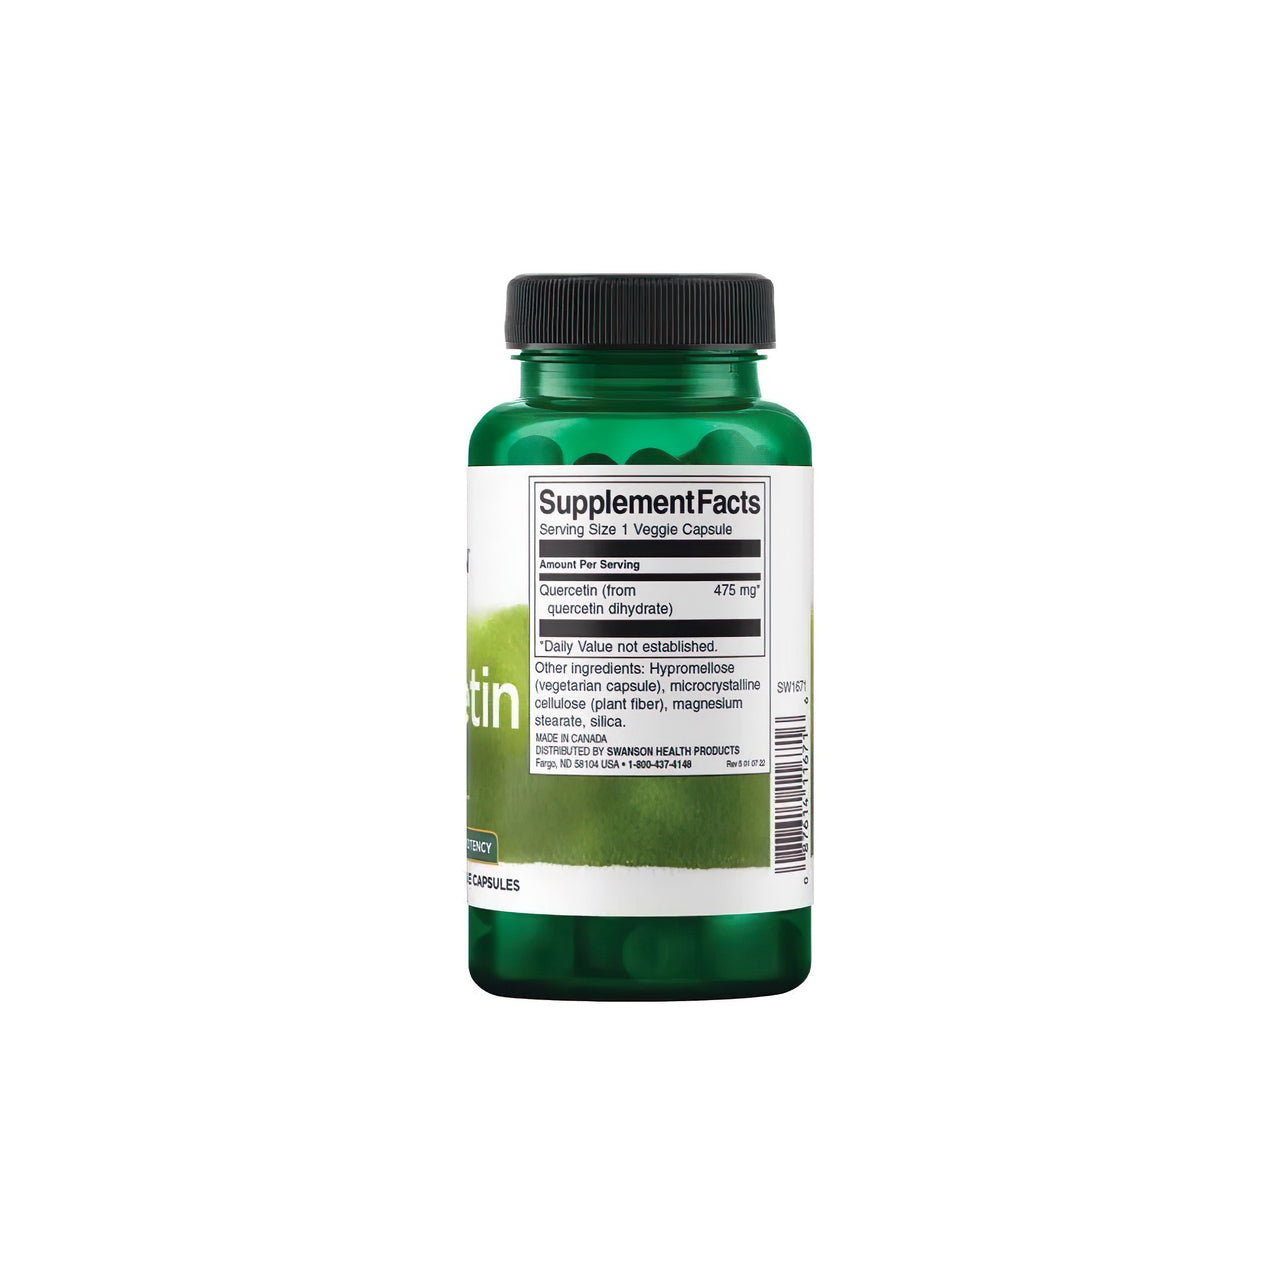 Un frasco de Quercetina rica en antioxidantes 475 mg 60 vcaps de Swanson sobre fondo blanco, que promueve los beneficios para el sistema inmunitario y los vasos sanguíneos.